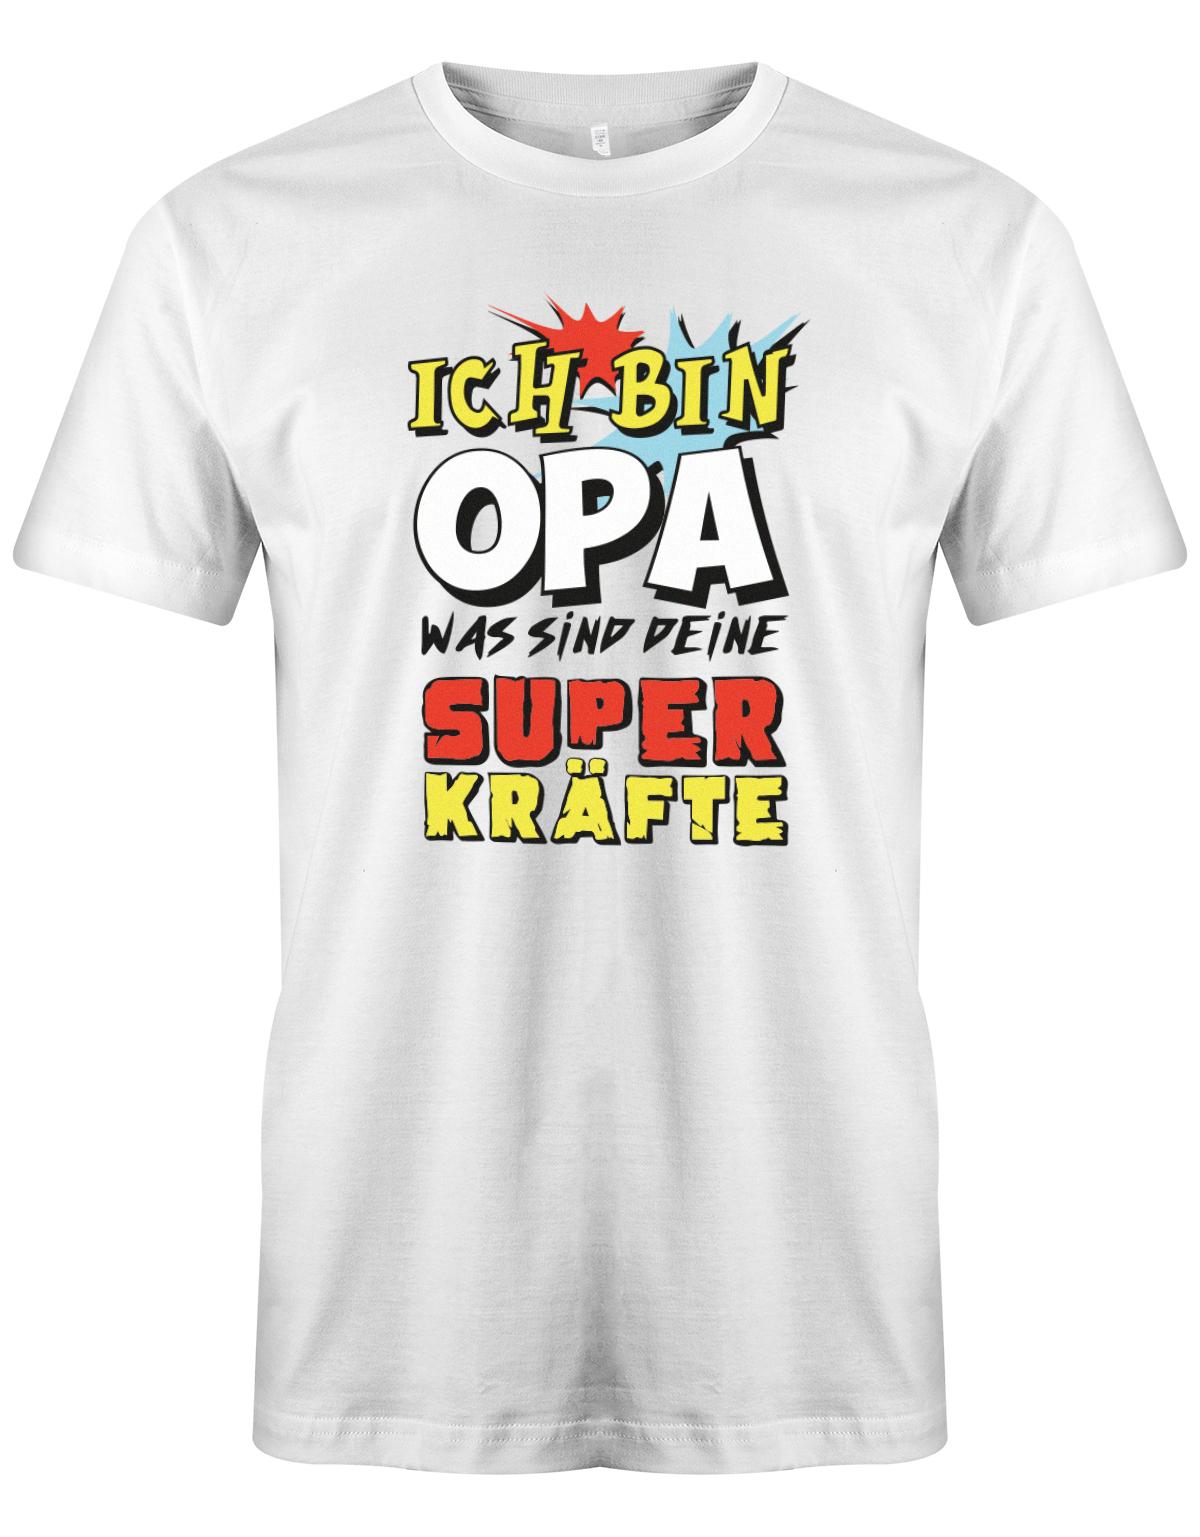 Opa T-Shirt – Ich bin Opa was sind deine Superkräfte Weiss